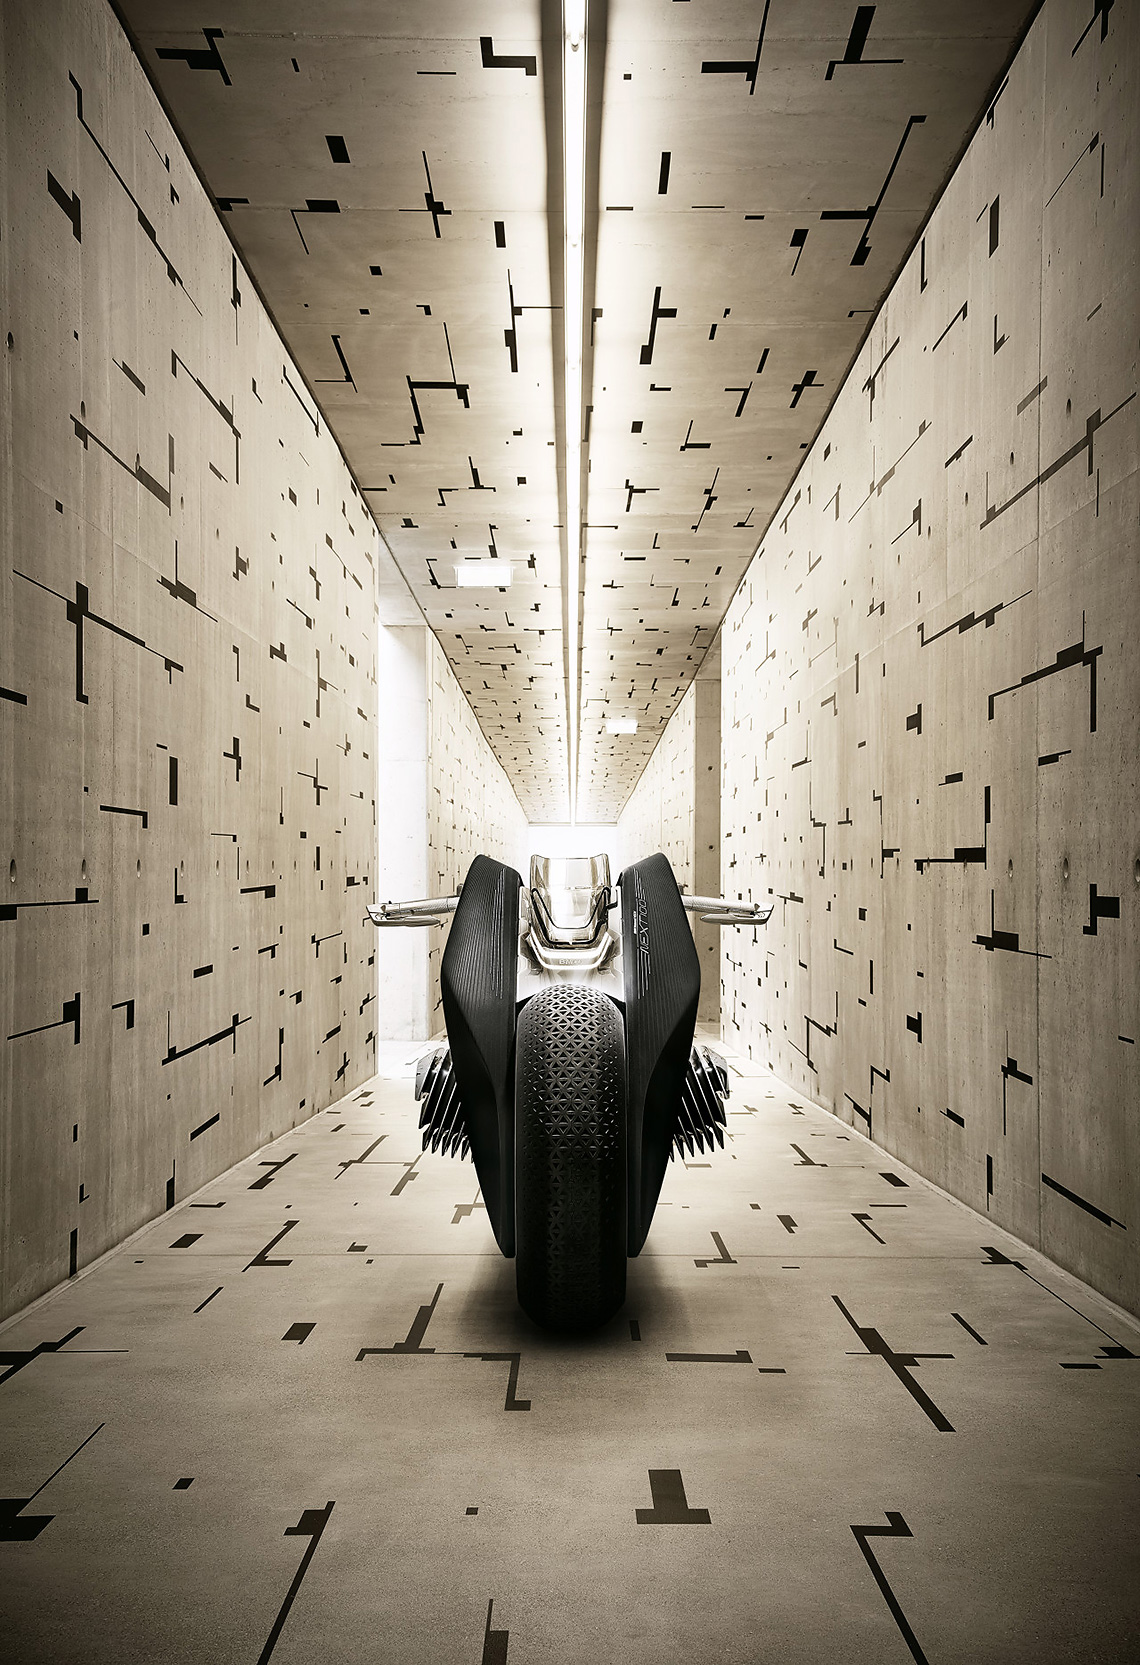 motocicletta di concetto BMW Motorrad Vision Next 100.